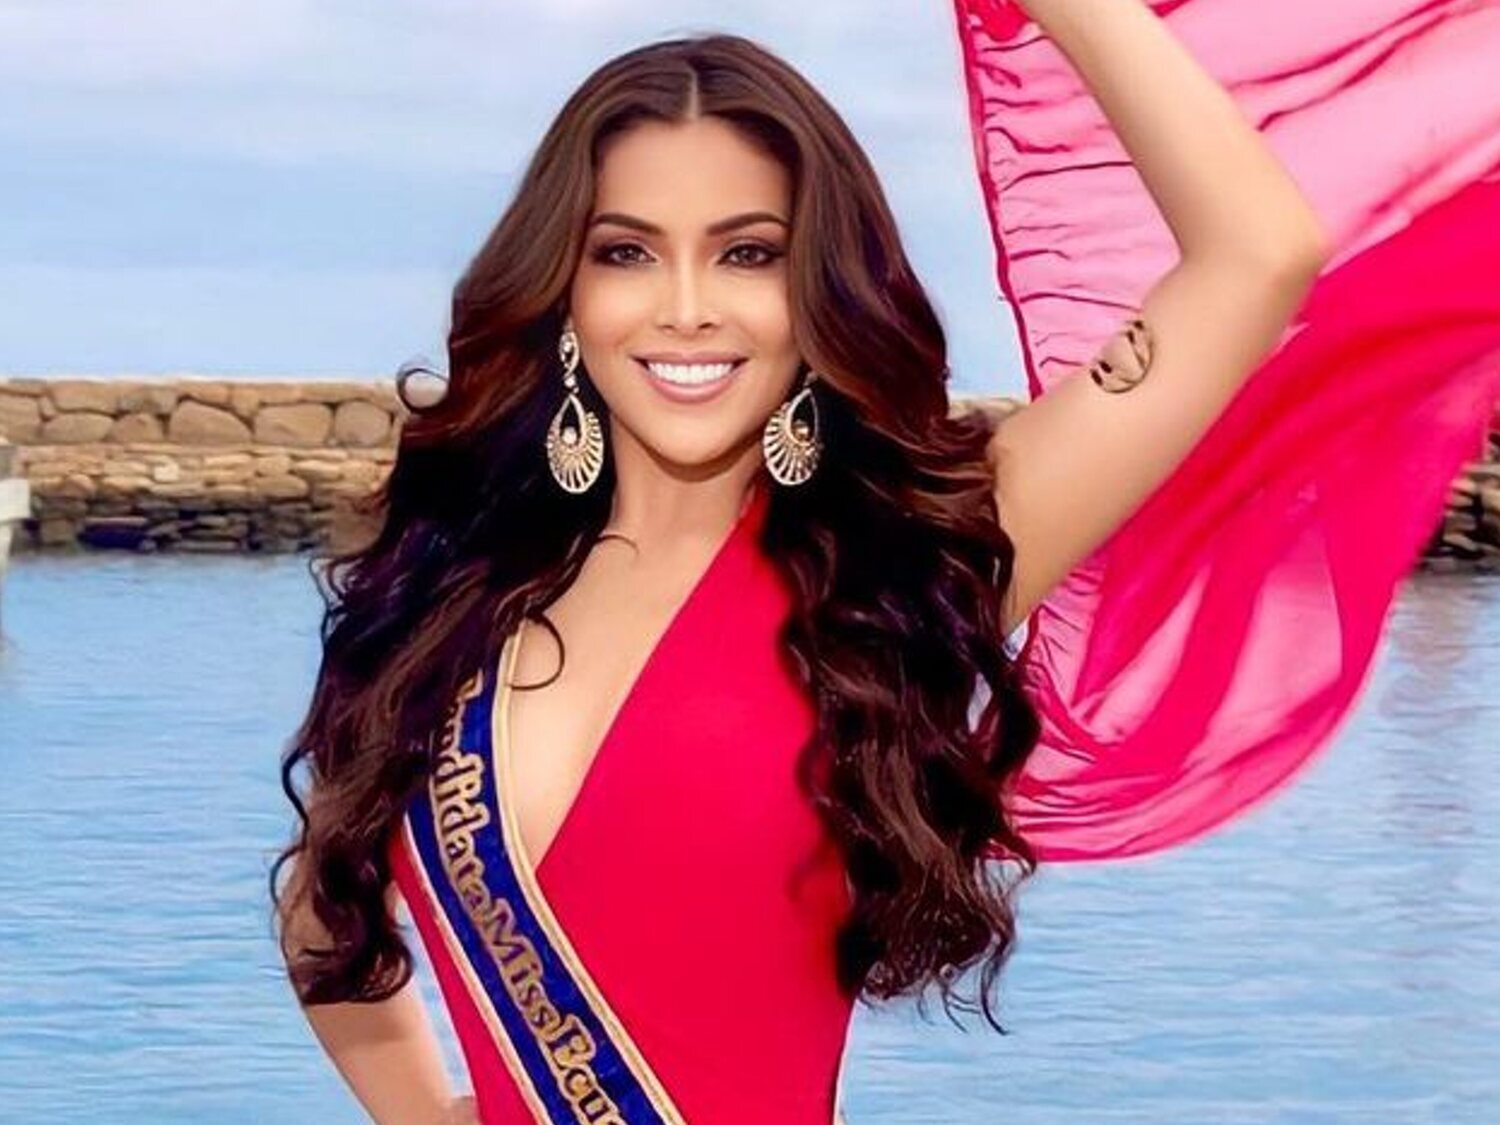 Asesinan a tiros a la aspirante a Miss Universo Landy Párraga a los 23 años